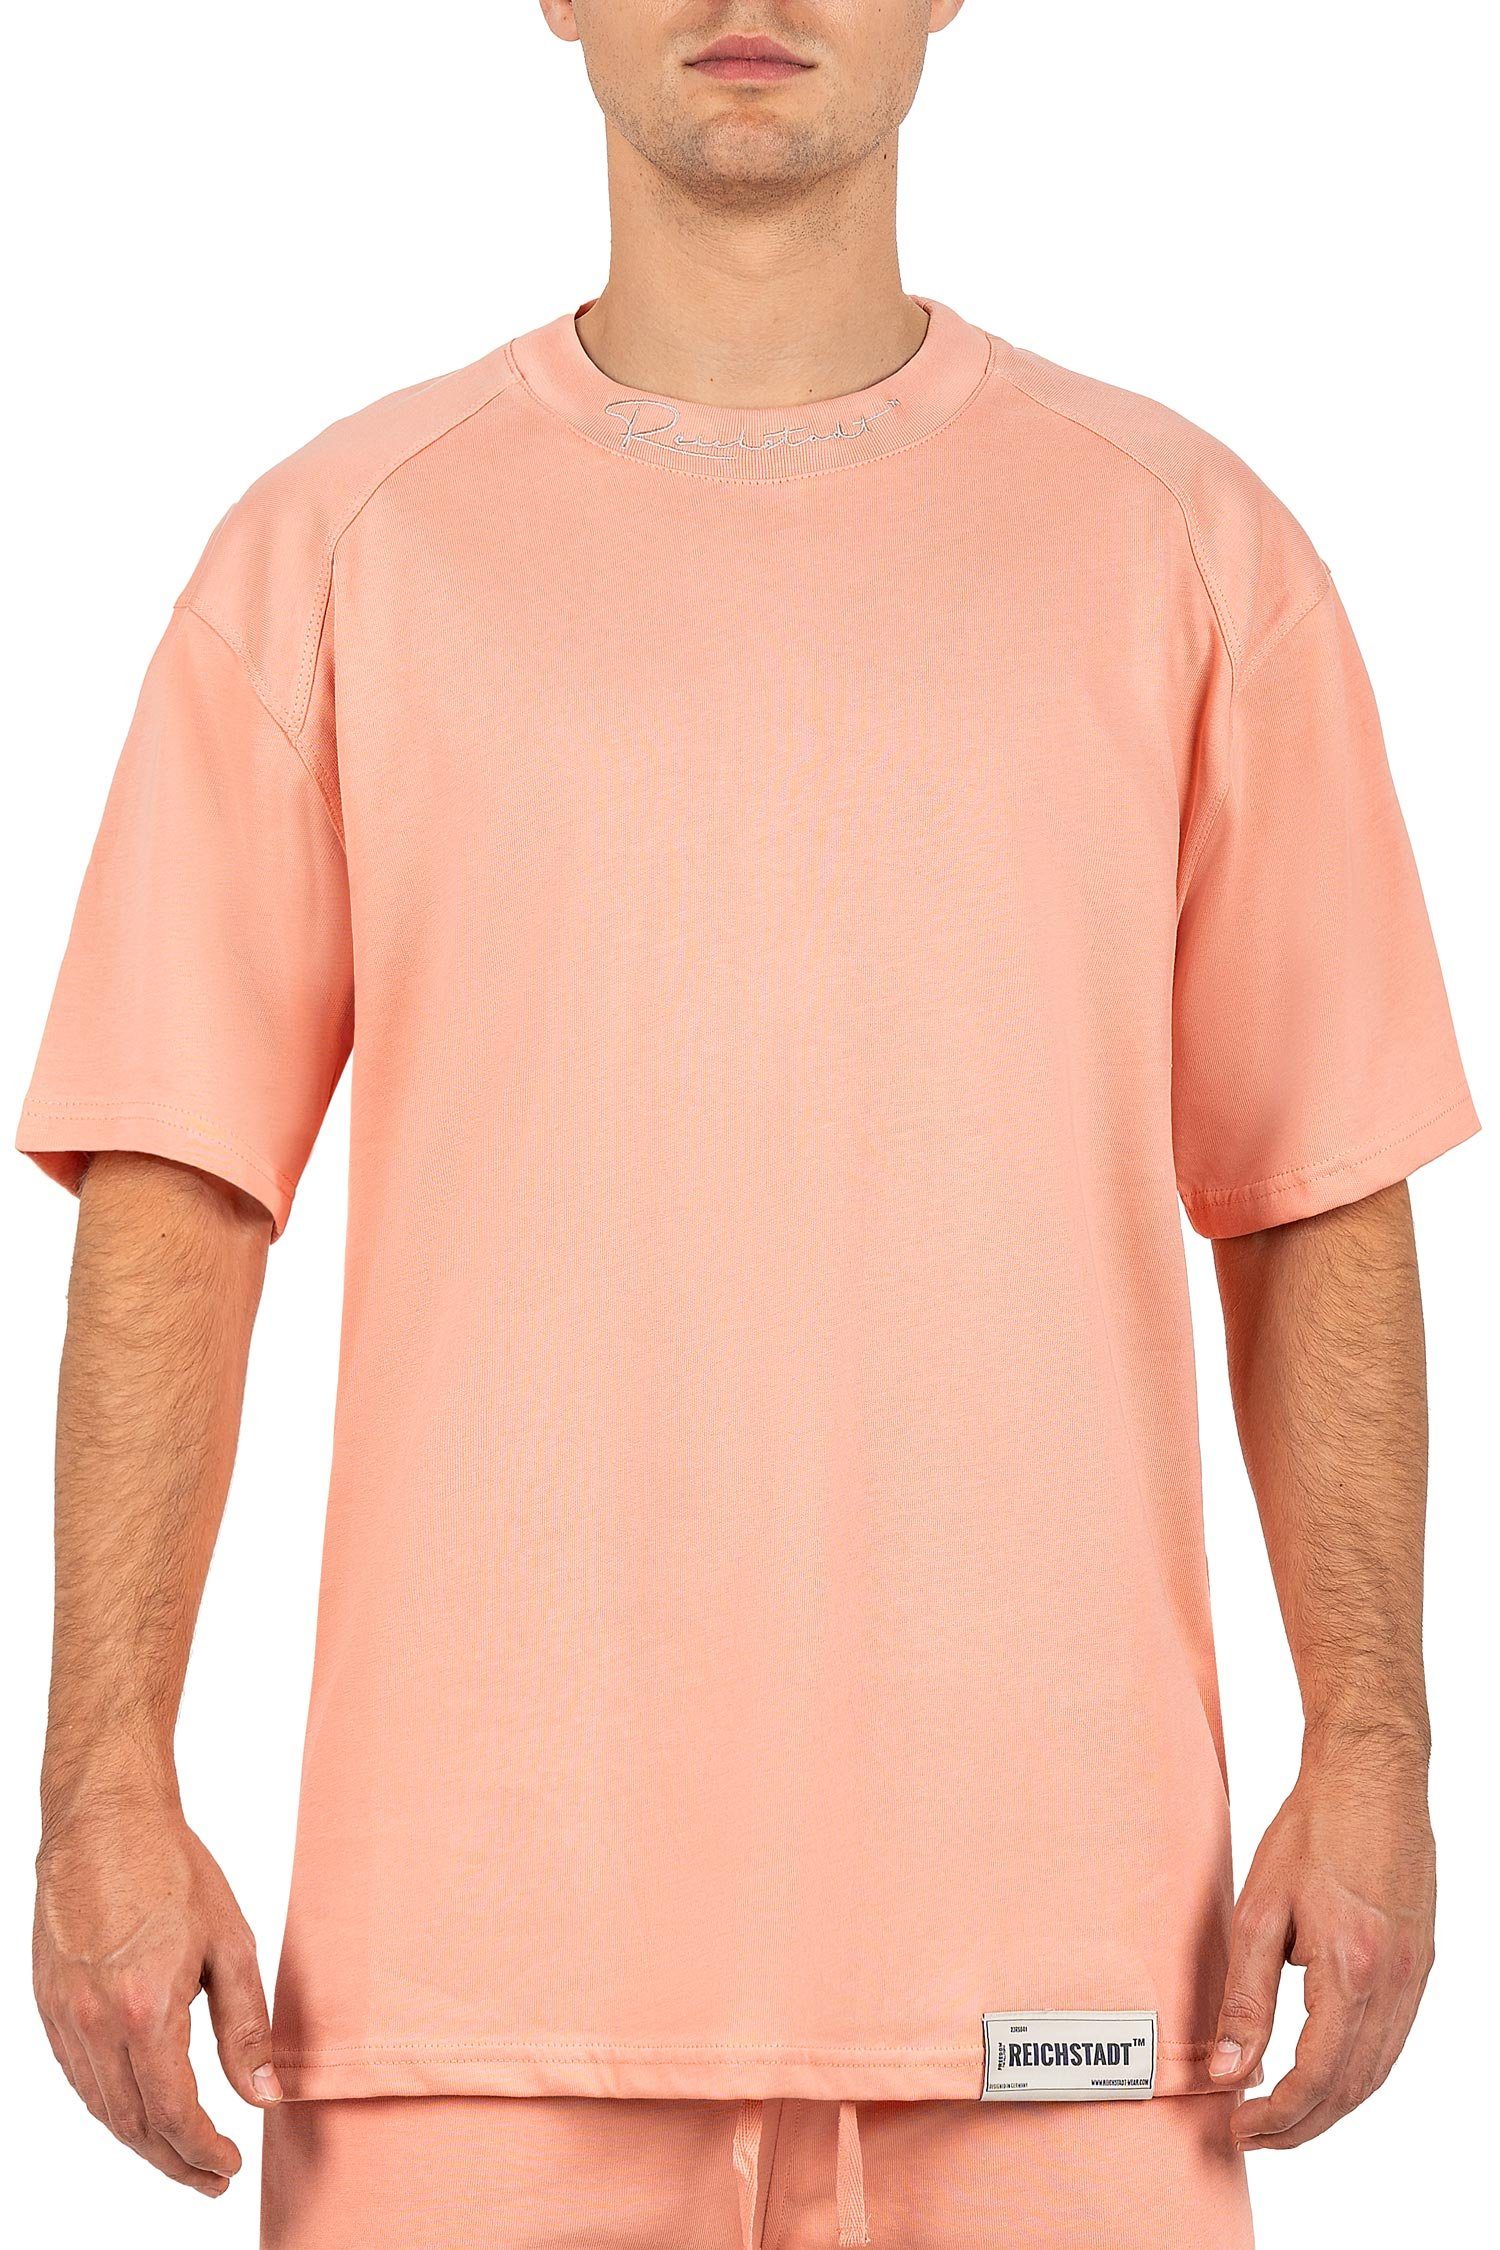 Reichstadt Oversize-Shirt Casual Kurzarm T-shirt 23RS041 Old Pink S mit Stitching am Kragen